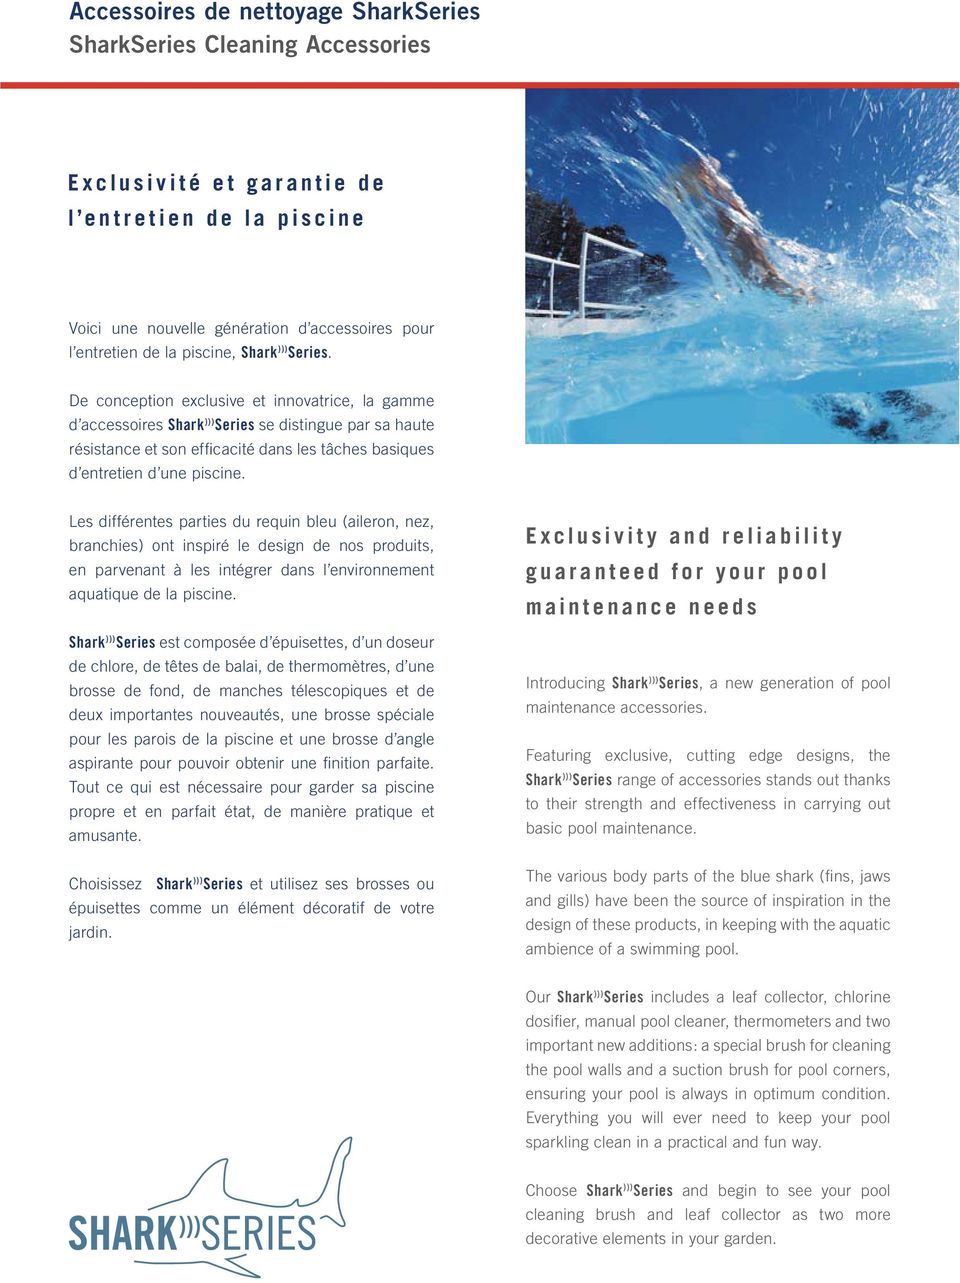 De conception exclusive et innovatrice, la gamme d accessoires Shark ))) Series se distingue par sa haute résistance et son efficacité dans les tâches basiques d entretien d une piscine.